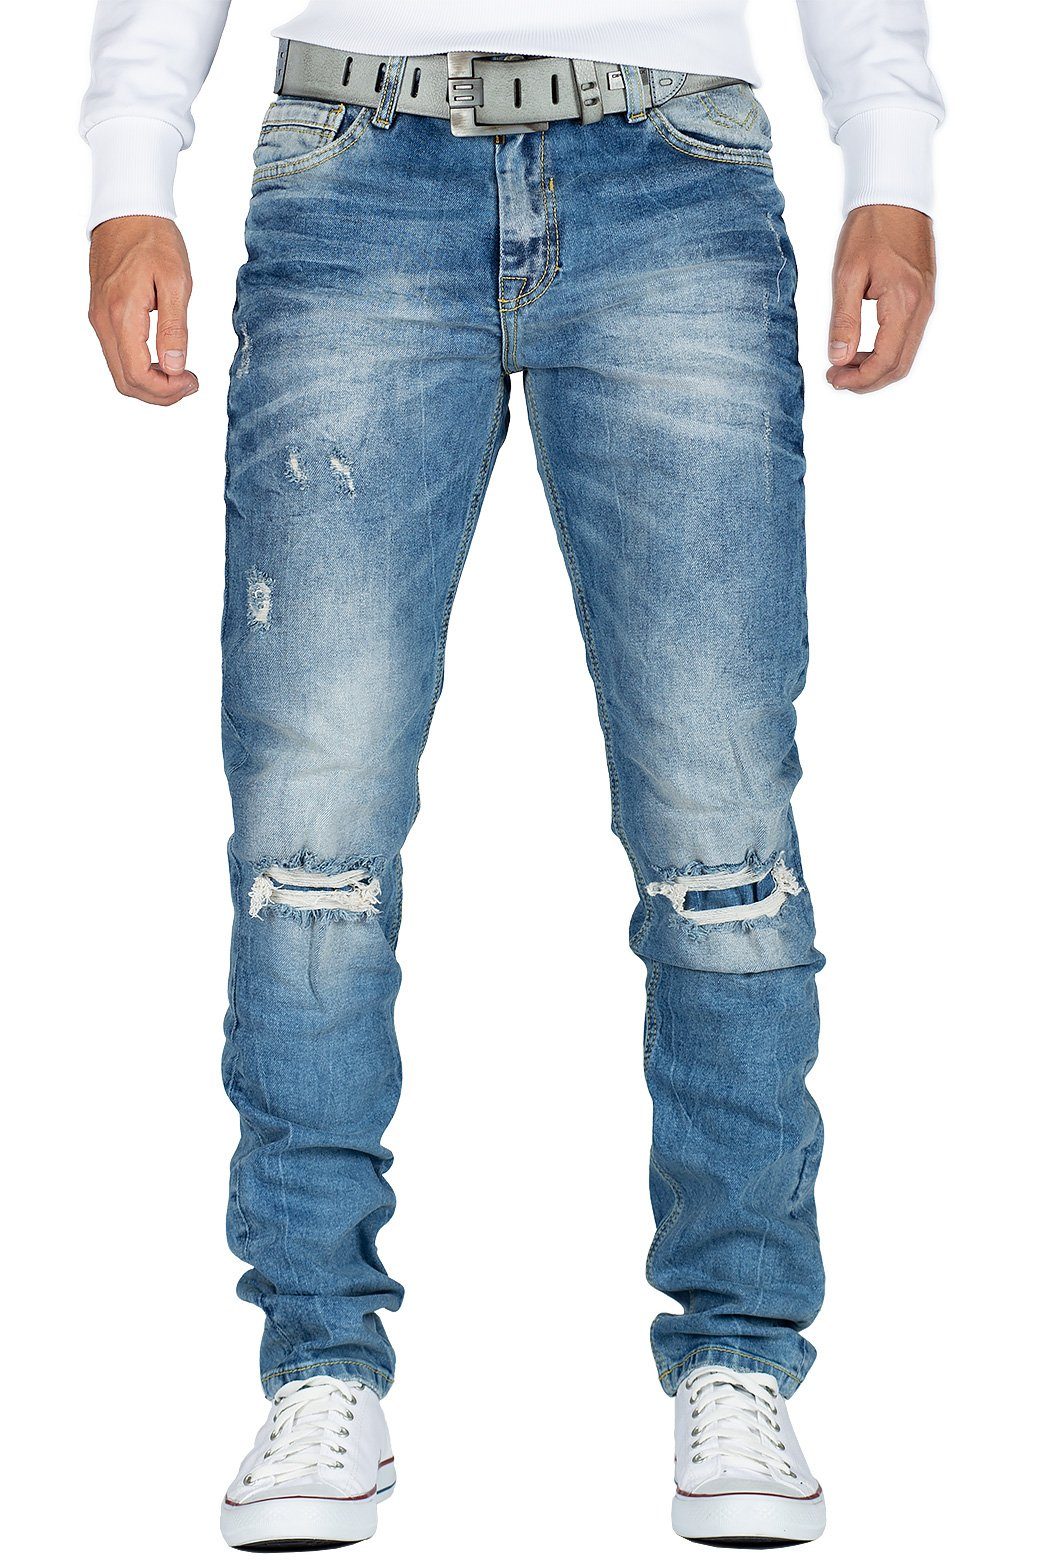 BLACK FRIDAY - Cipo & Baxx Destroyed-Jeans »Cipo & Baxx Herren Jeans Hose  BA-CD428 slim fit« mit Desttoyed-Effekten und verstärkten Knielöchern  kaufen | OTTO